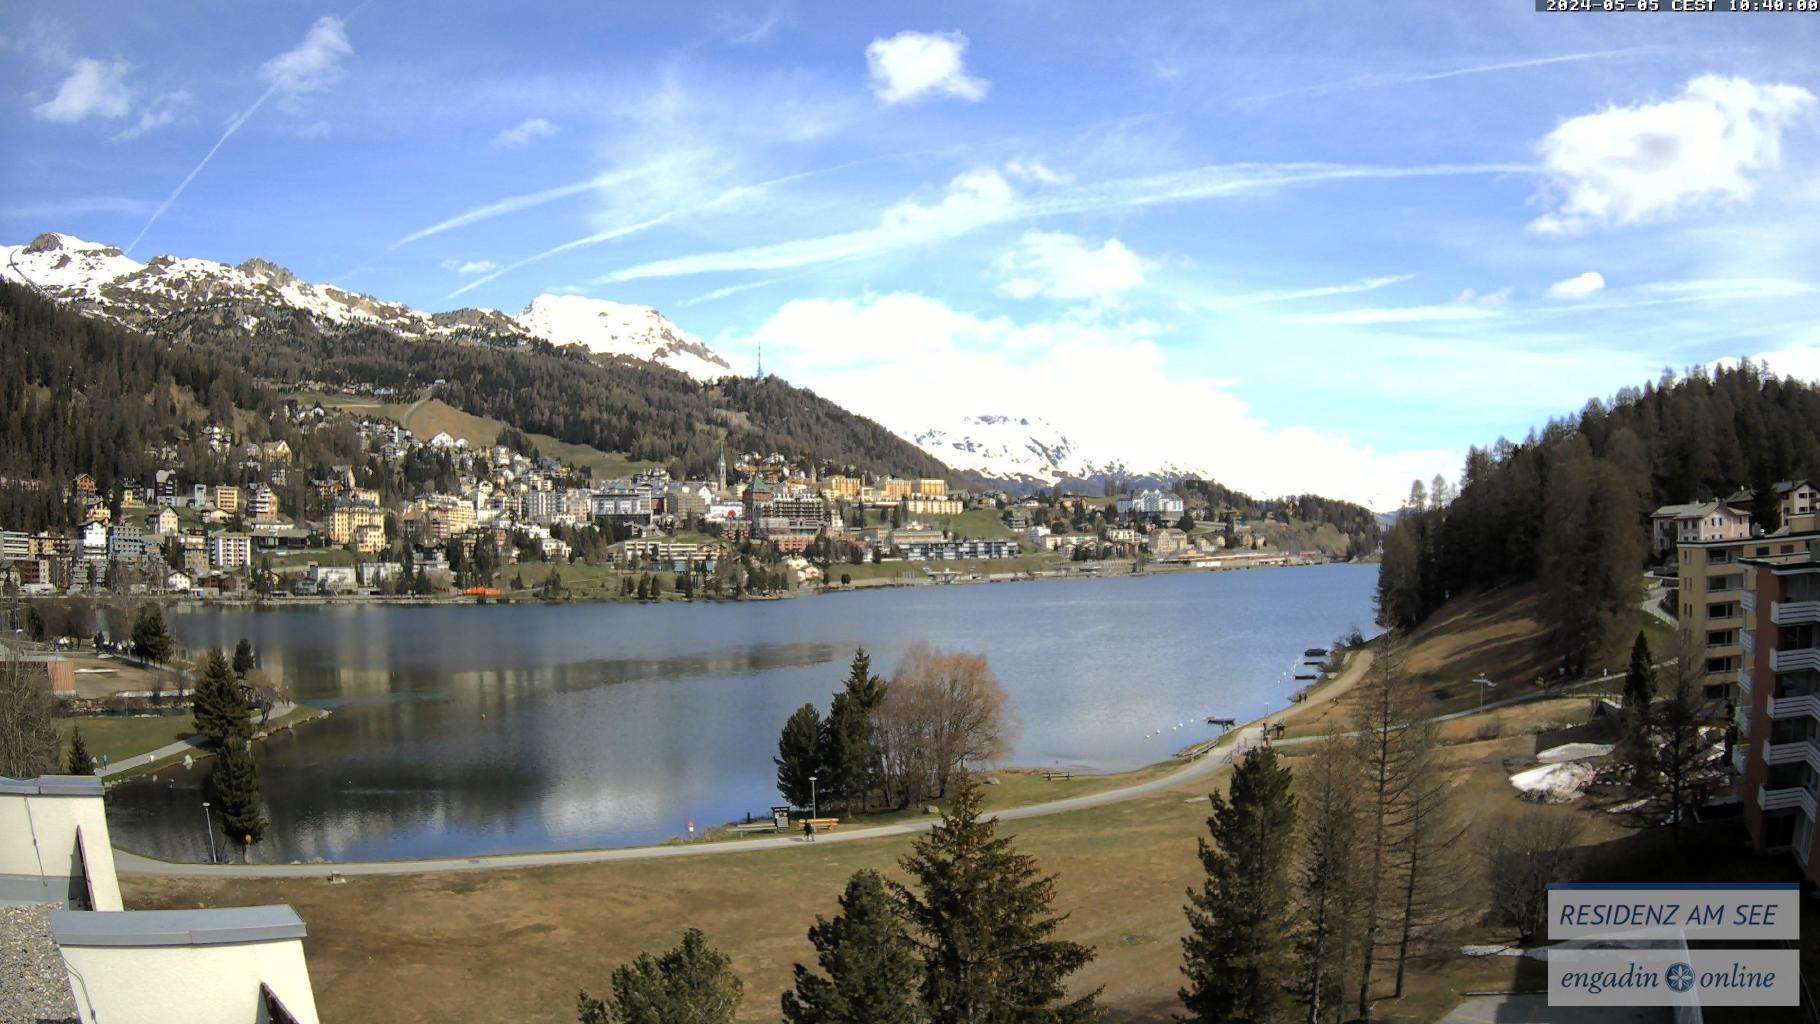 St. Moritz: St. Moritz, Dorf